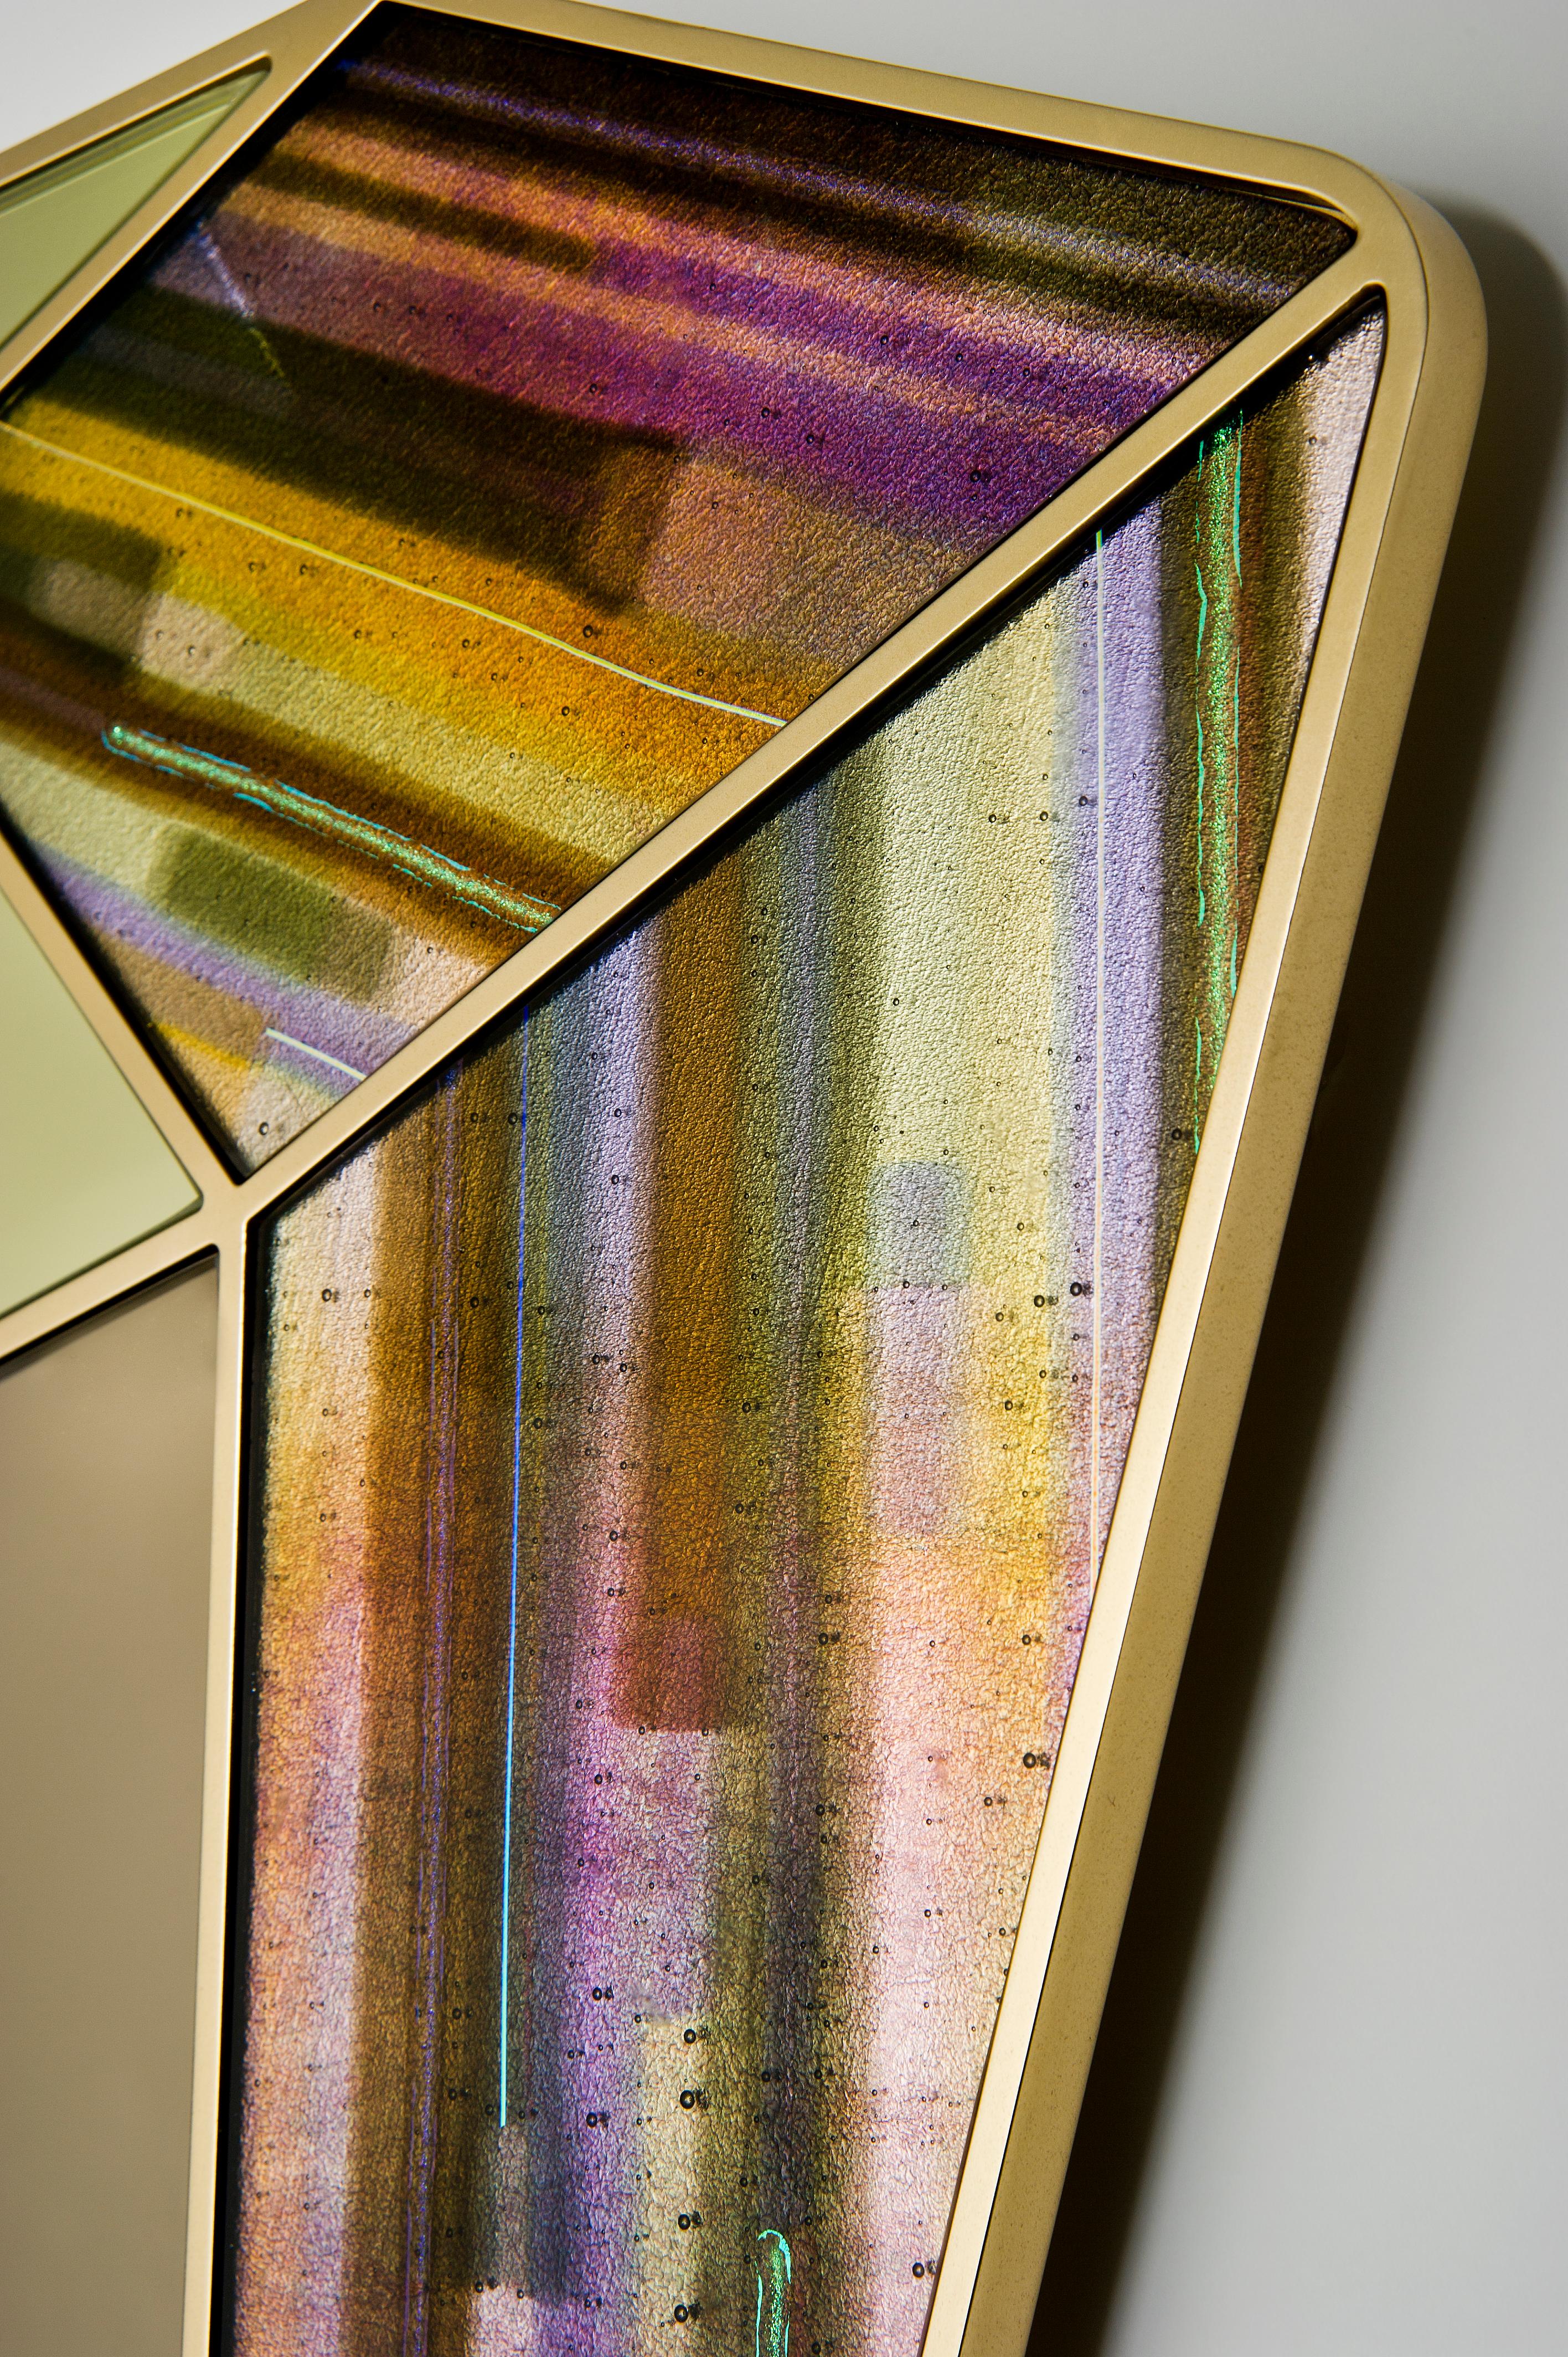 Der Treasure Collection Spiegel aus Goldquarz ist ein einzigartiger Spiegel aus Kunstglas und Aluminium von der britischen Designerin und Künstlerin Amy Cushing.

Die Treasure-Kollektion besteht aus einer Reihe einzigartiger zeitgenössischer